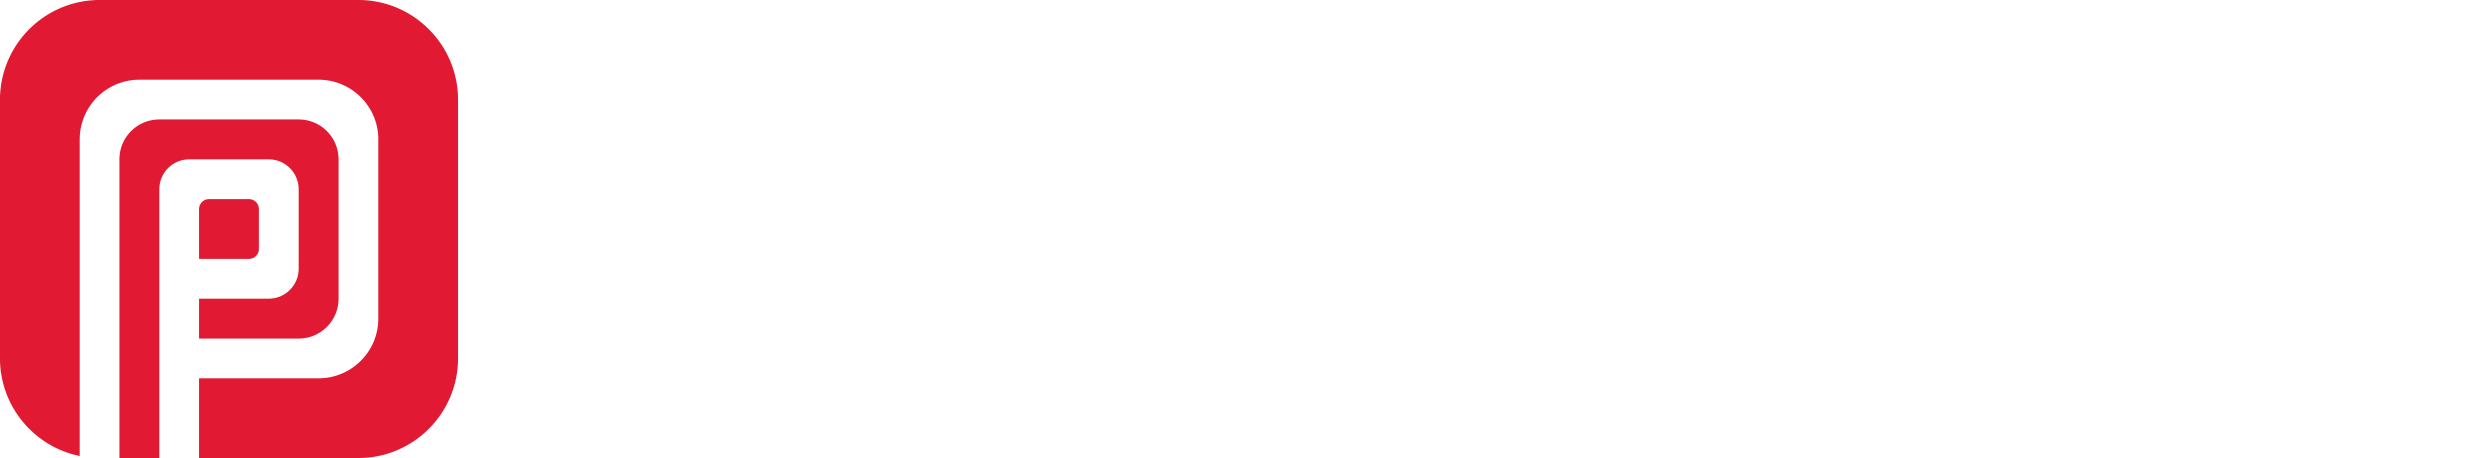 Logo Pentagrama letras Blanca PNG